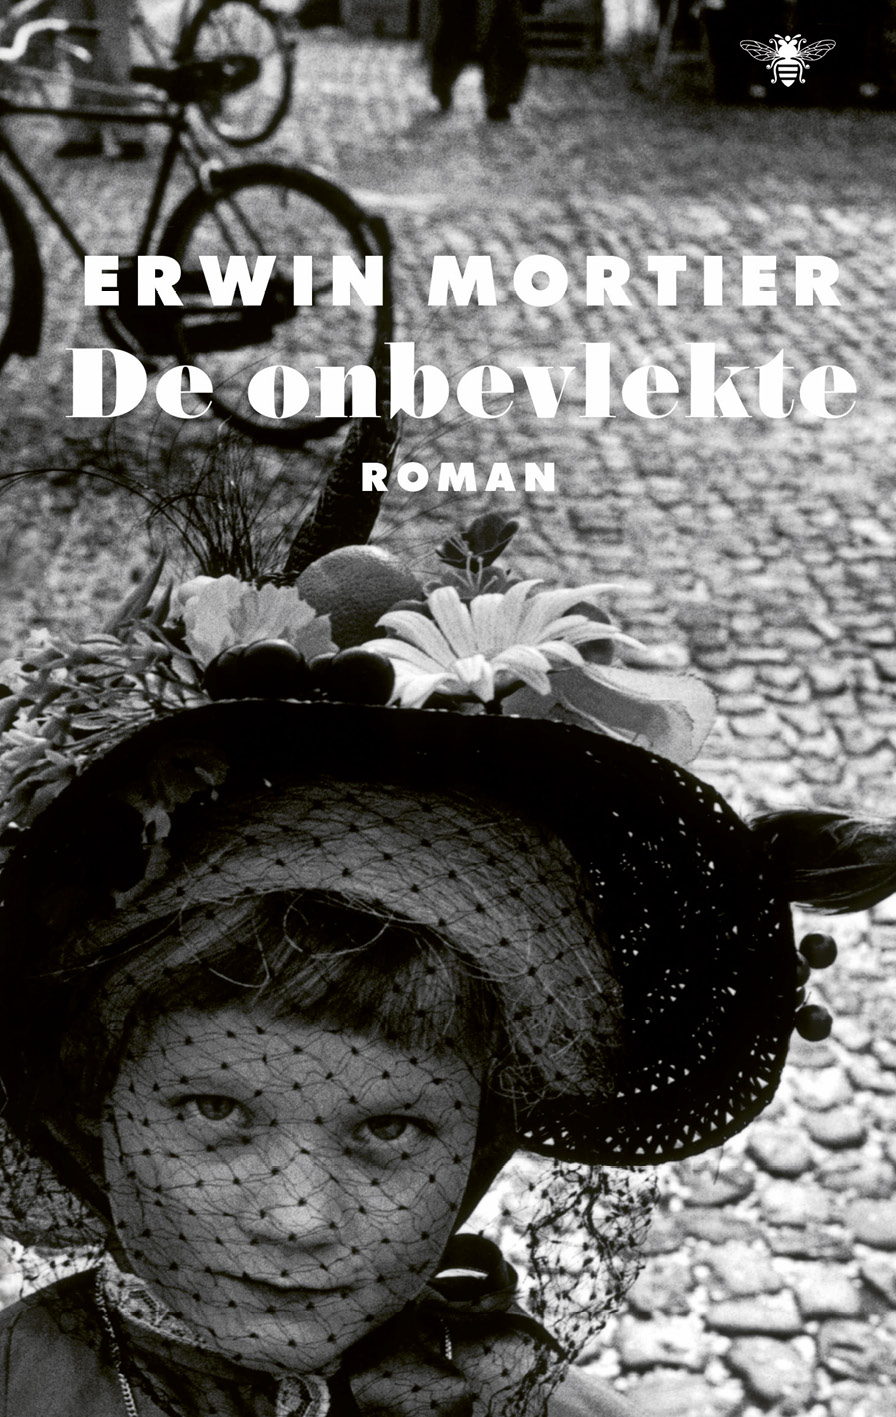 Mortier, Erwin - De onbevlekte